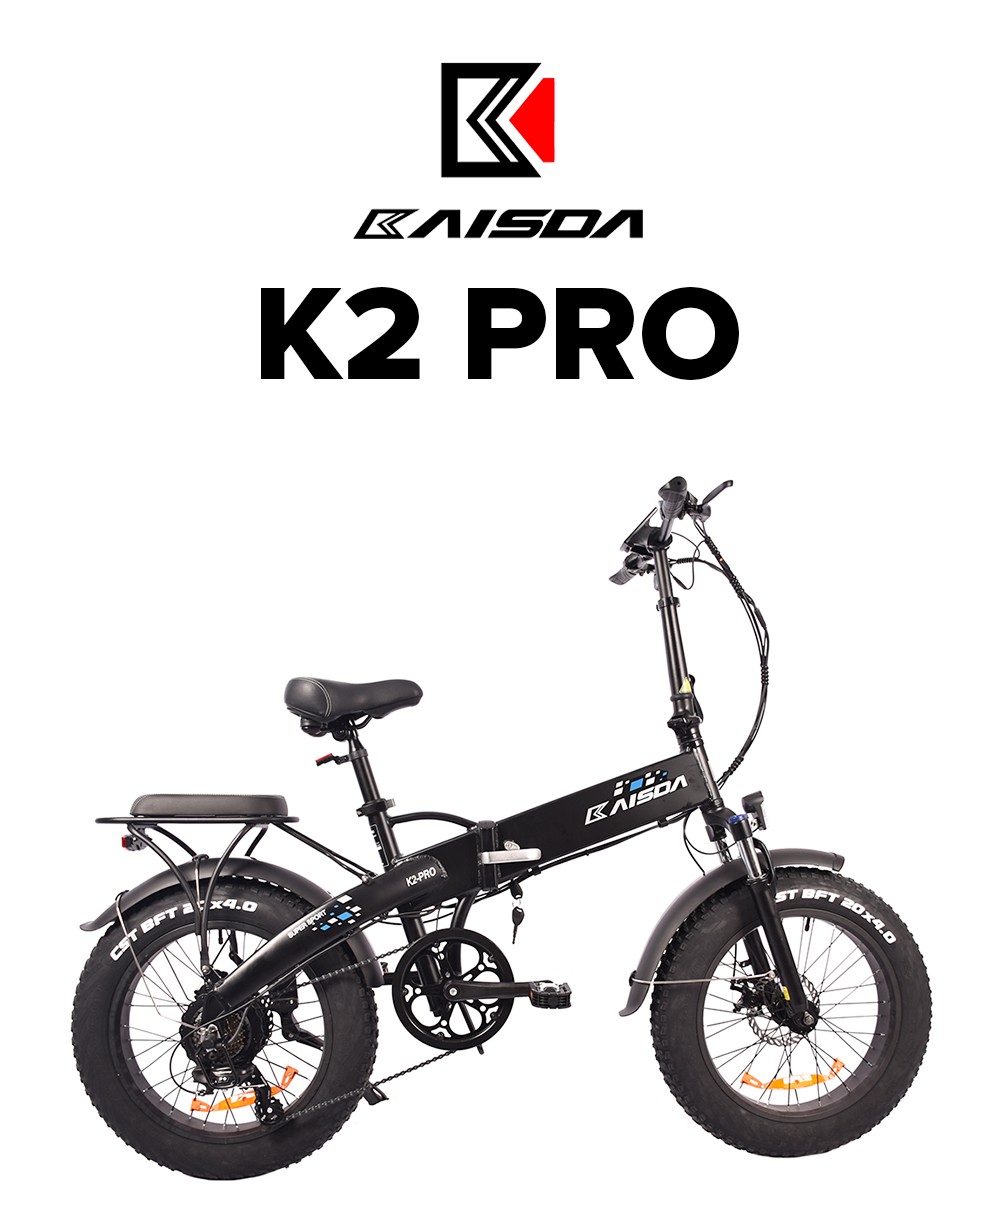 KAISDA K2 Pro 20*4.0 inch Fat Tire Folding Electric Moped Bike Mountain Bicycle Bafang 350W Motor SHIMANO Gear